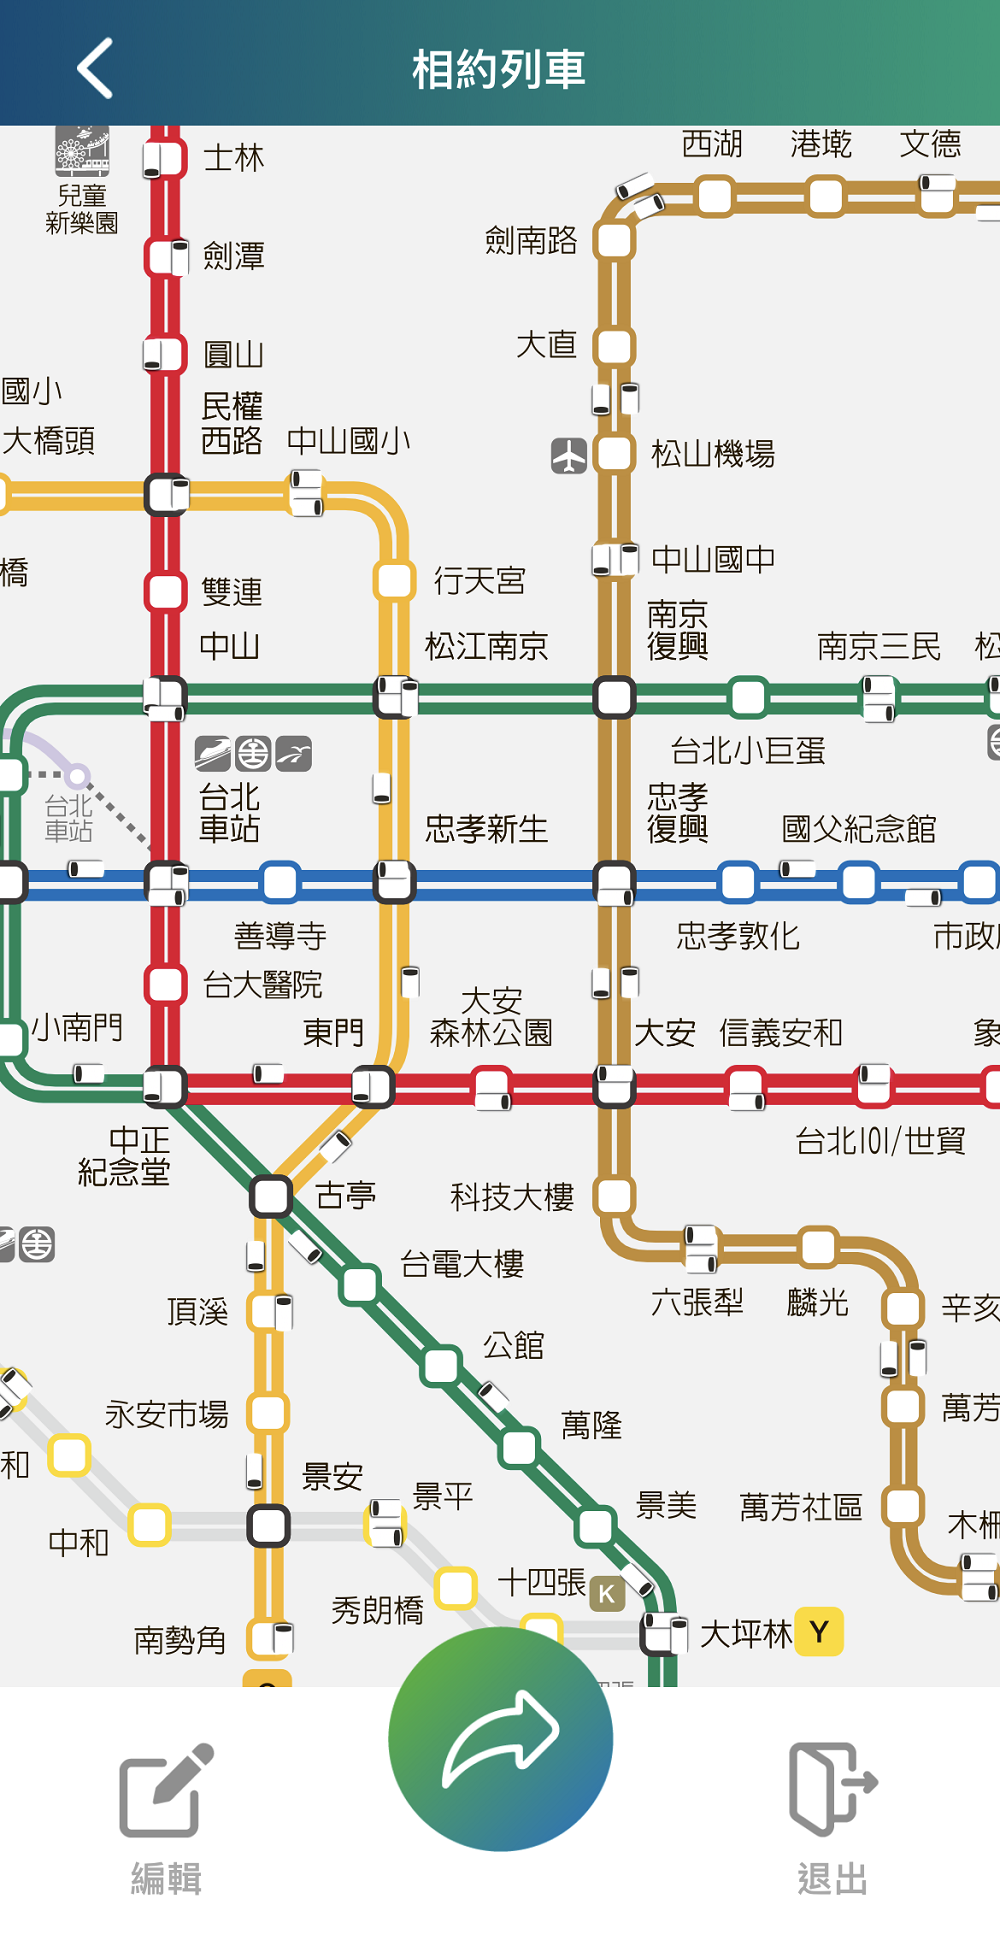 「台北捷運GO」App增加「相約列車」功能 可更快追蹤約定列車位置 - 電腦王阿達